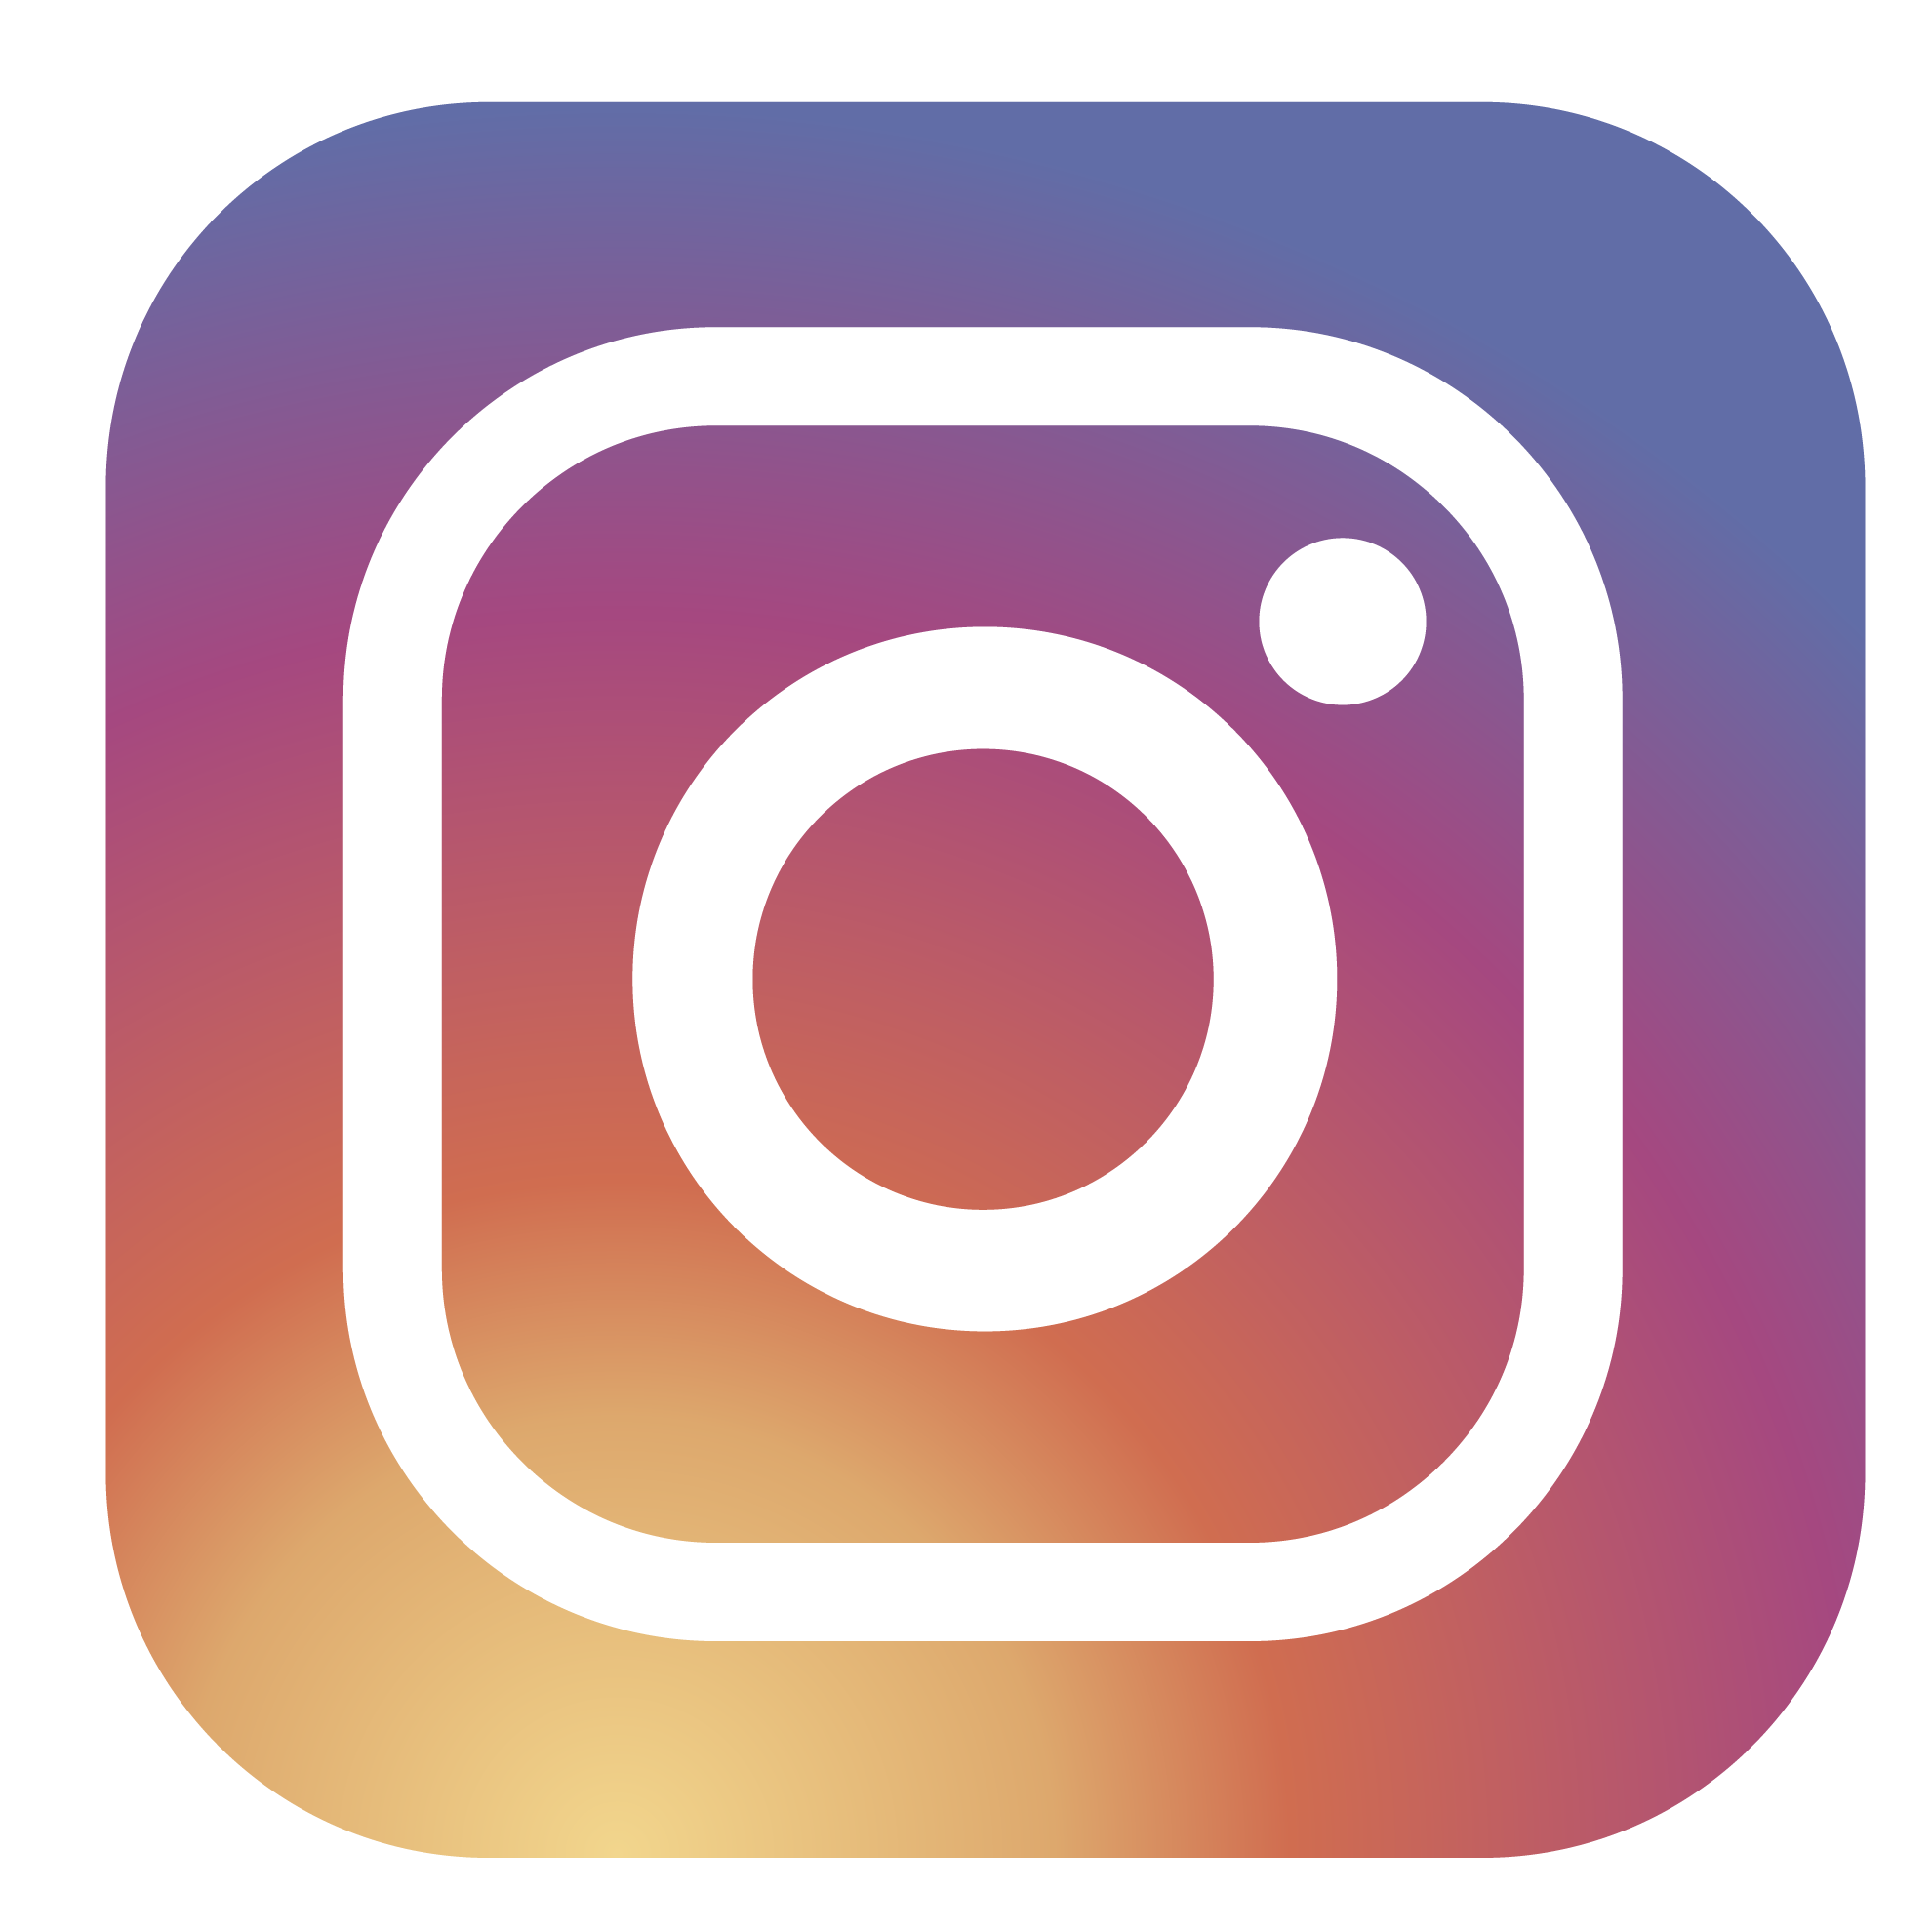 Logotipo Instagram con tu recarga telefónica Movistar prepago ilimitado